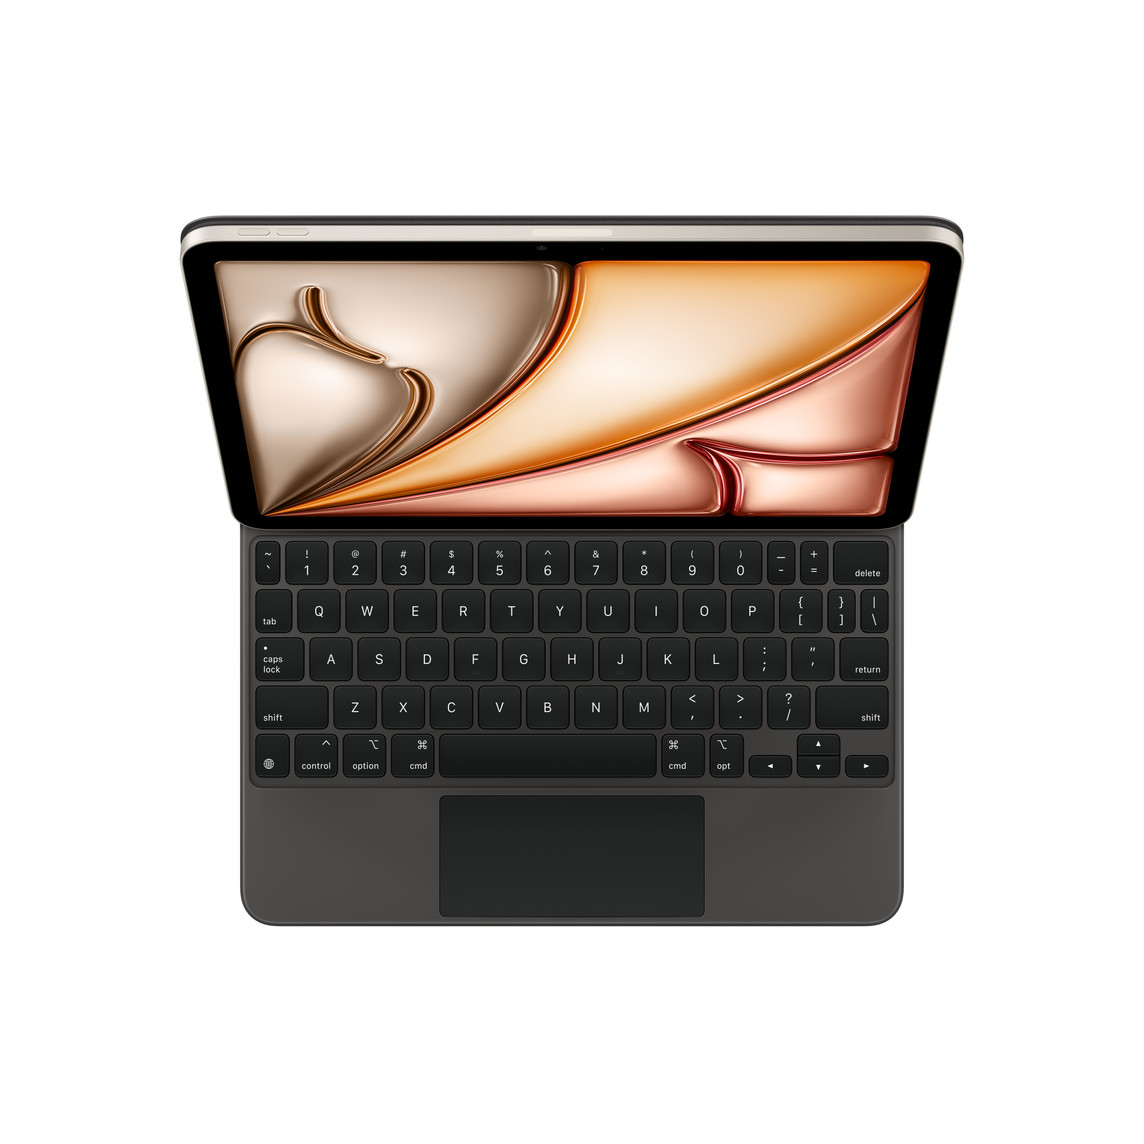 iPad Air fixé au Magic Keyboard, noir, touches noires avec lettres blanches, touches fléchées en T inversé, trackpad intégré